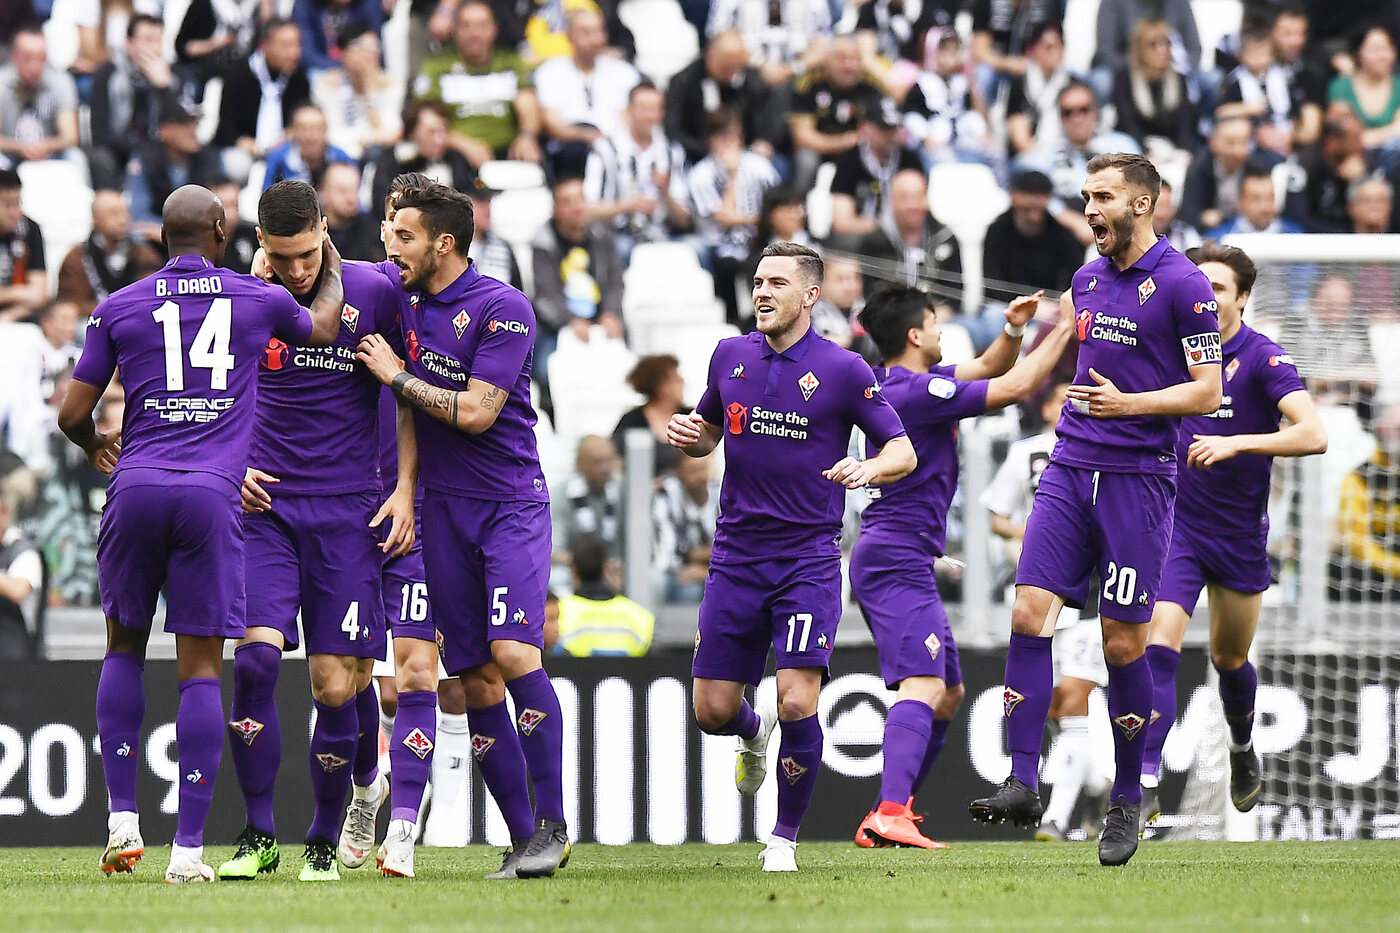 Serie A, Fiorentina-Genoa domenica 26 maggio: analisi e pronostico dell'ultima giornata del campionato italiano